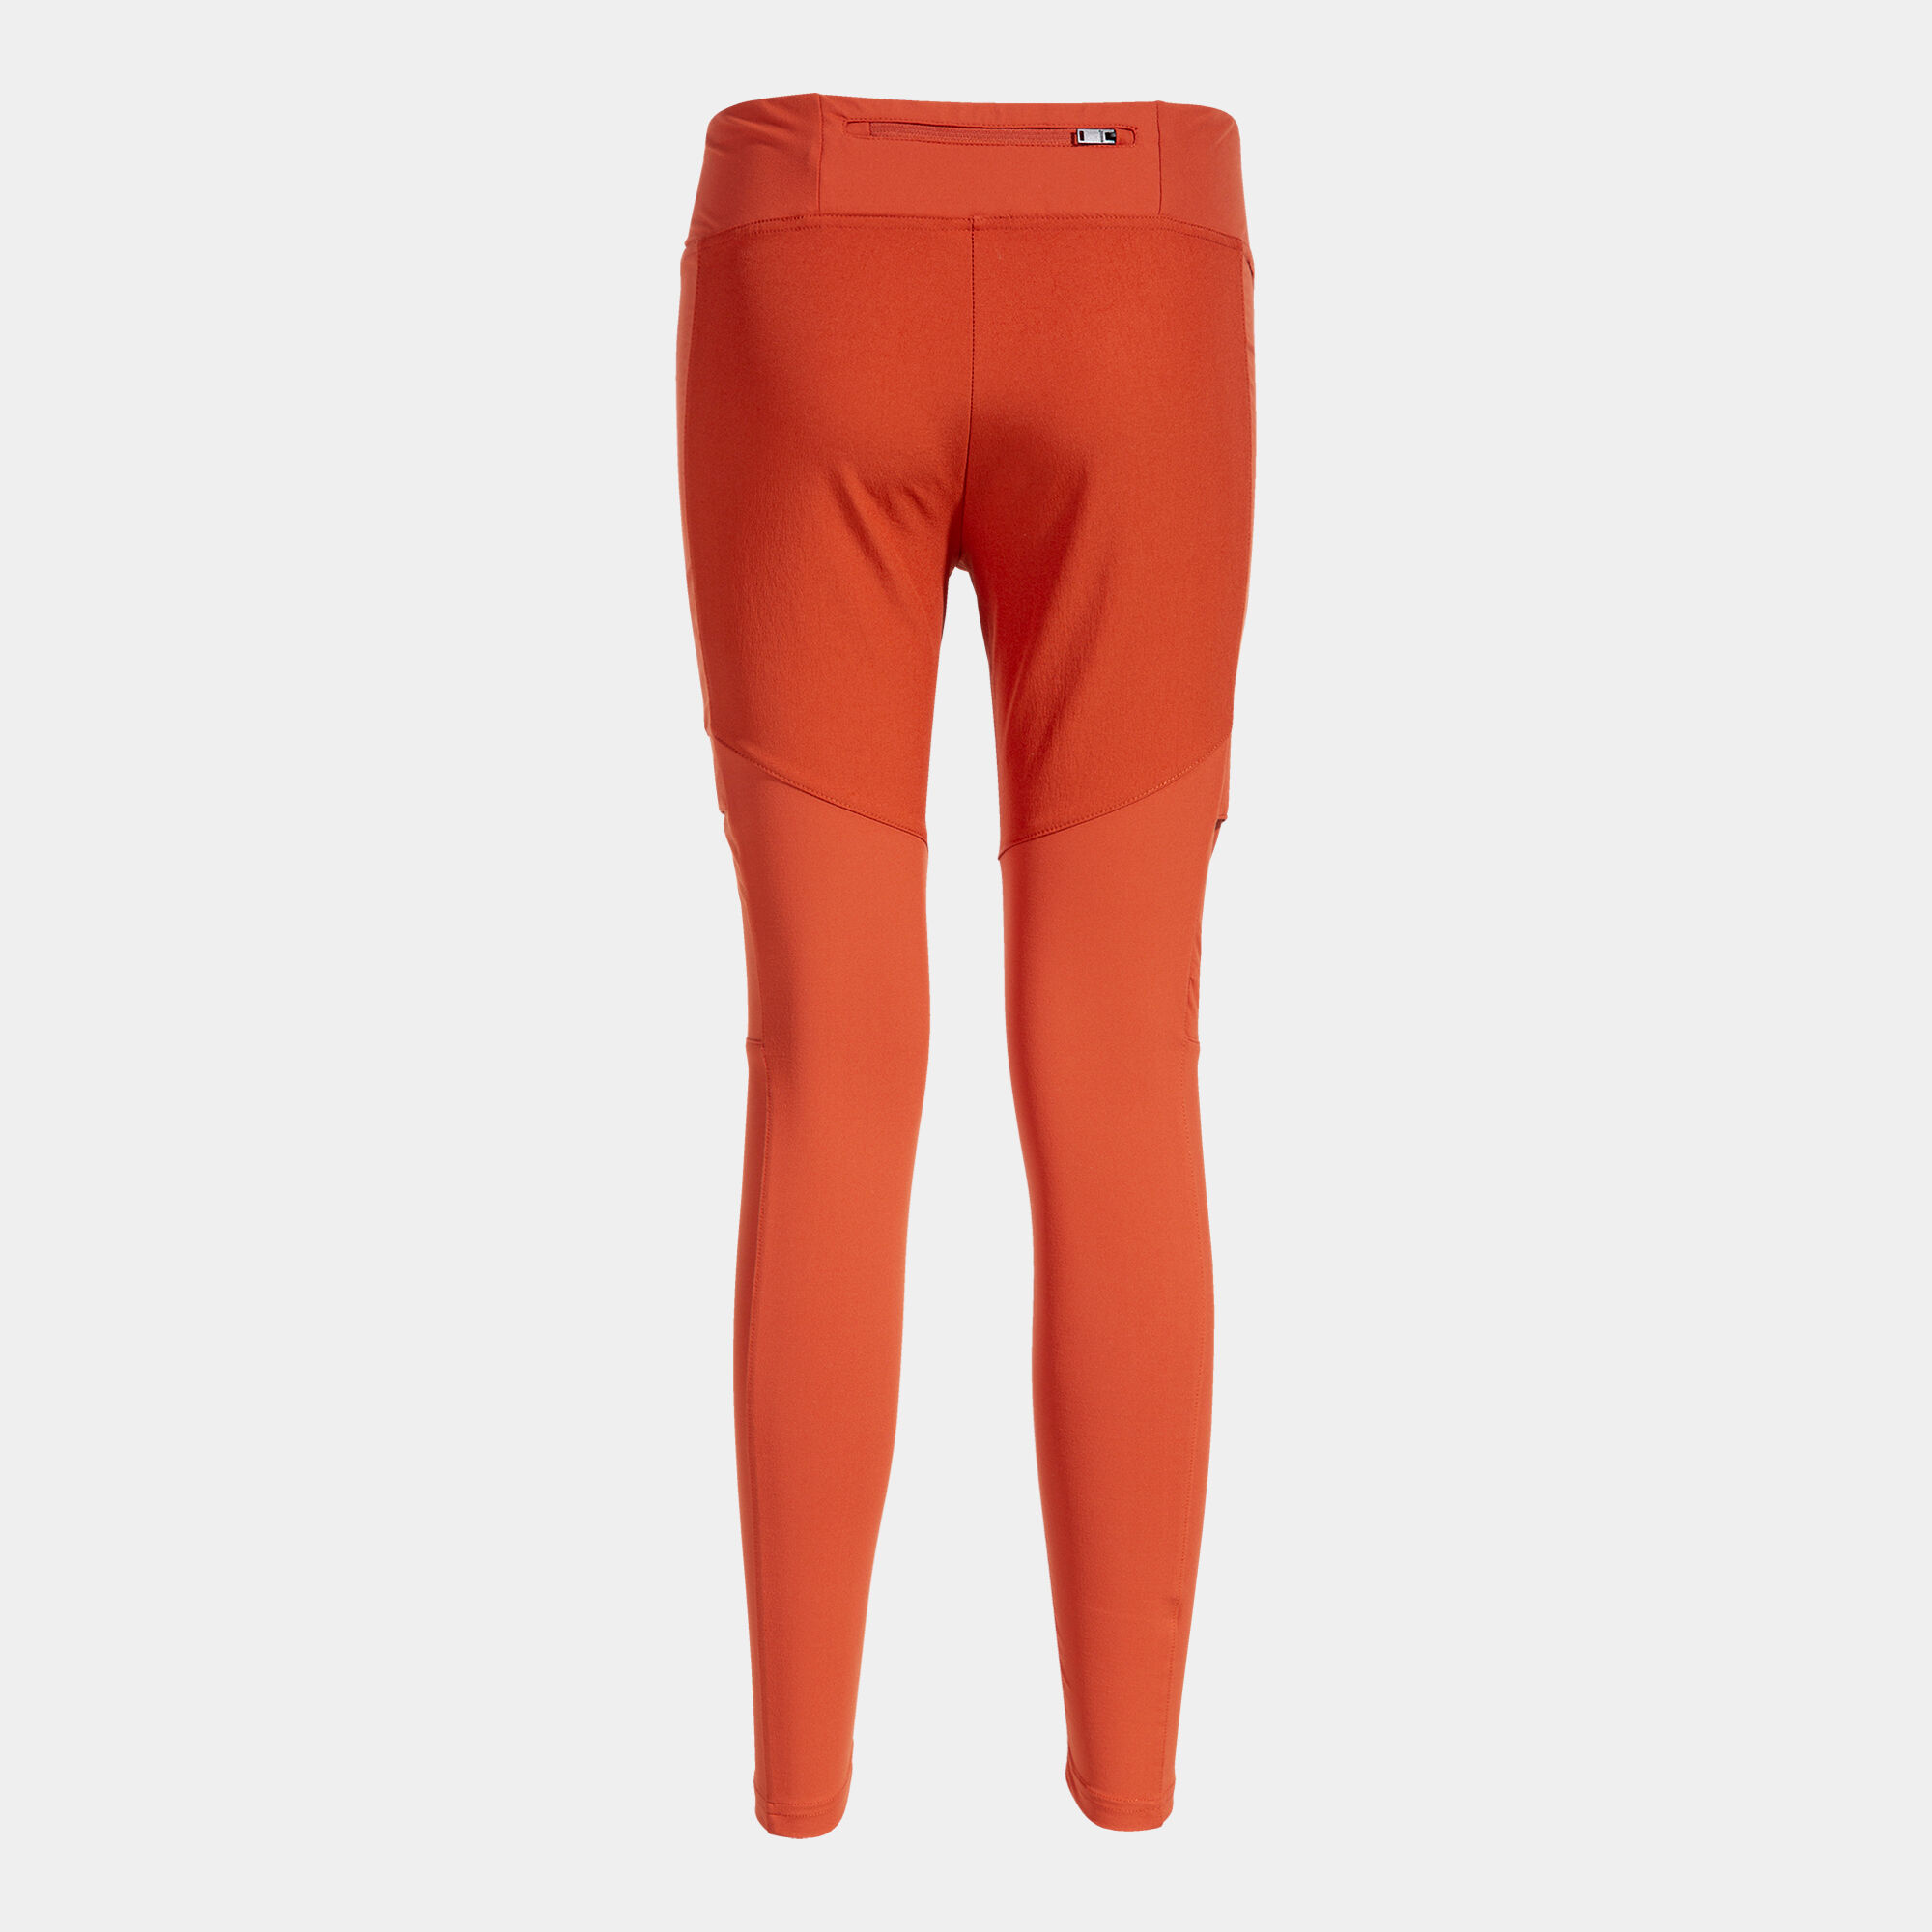 Pantalone lungo donna Explorer rosso